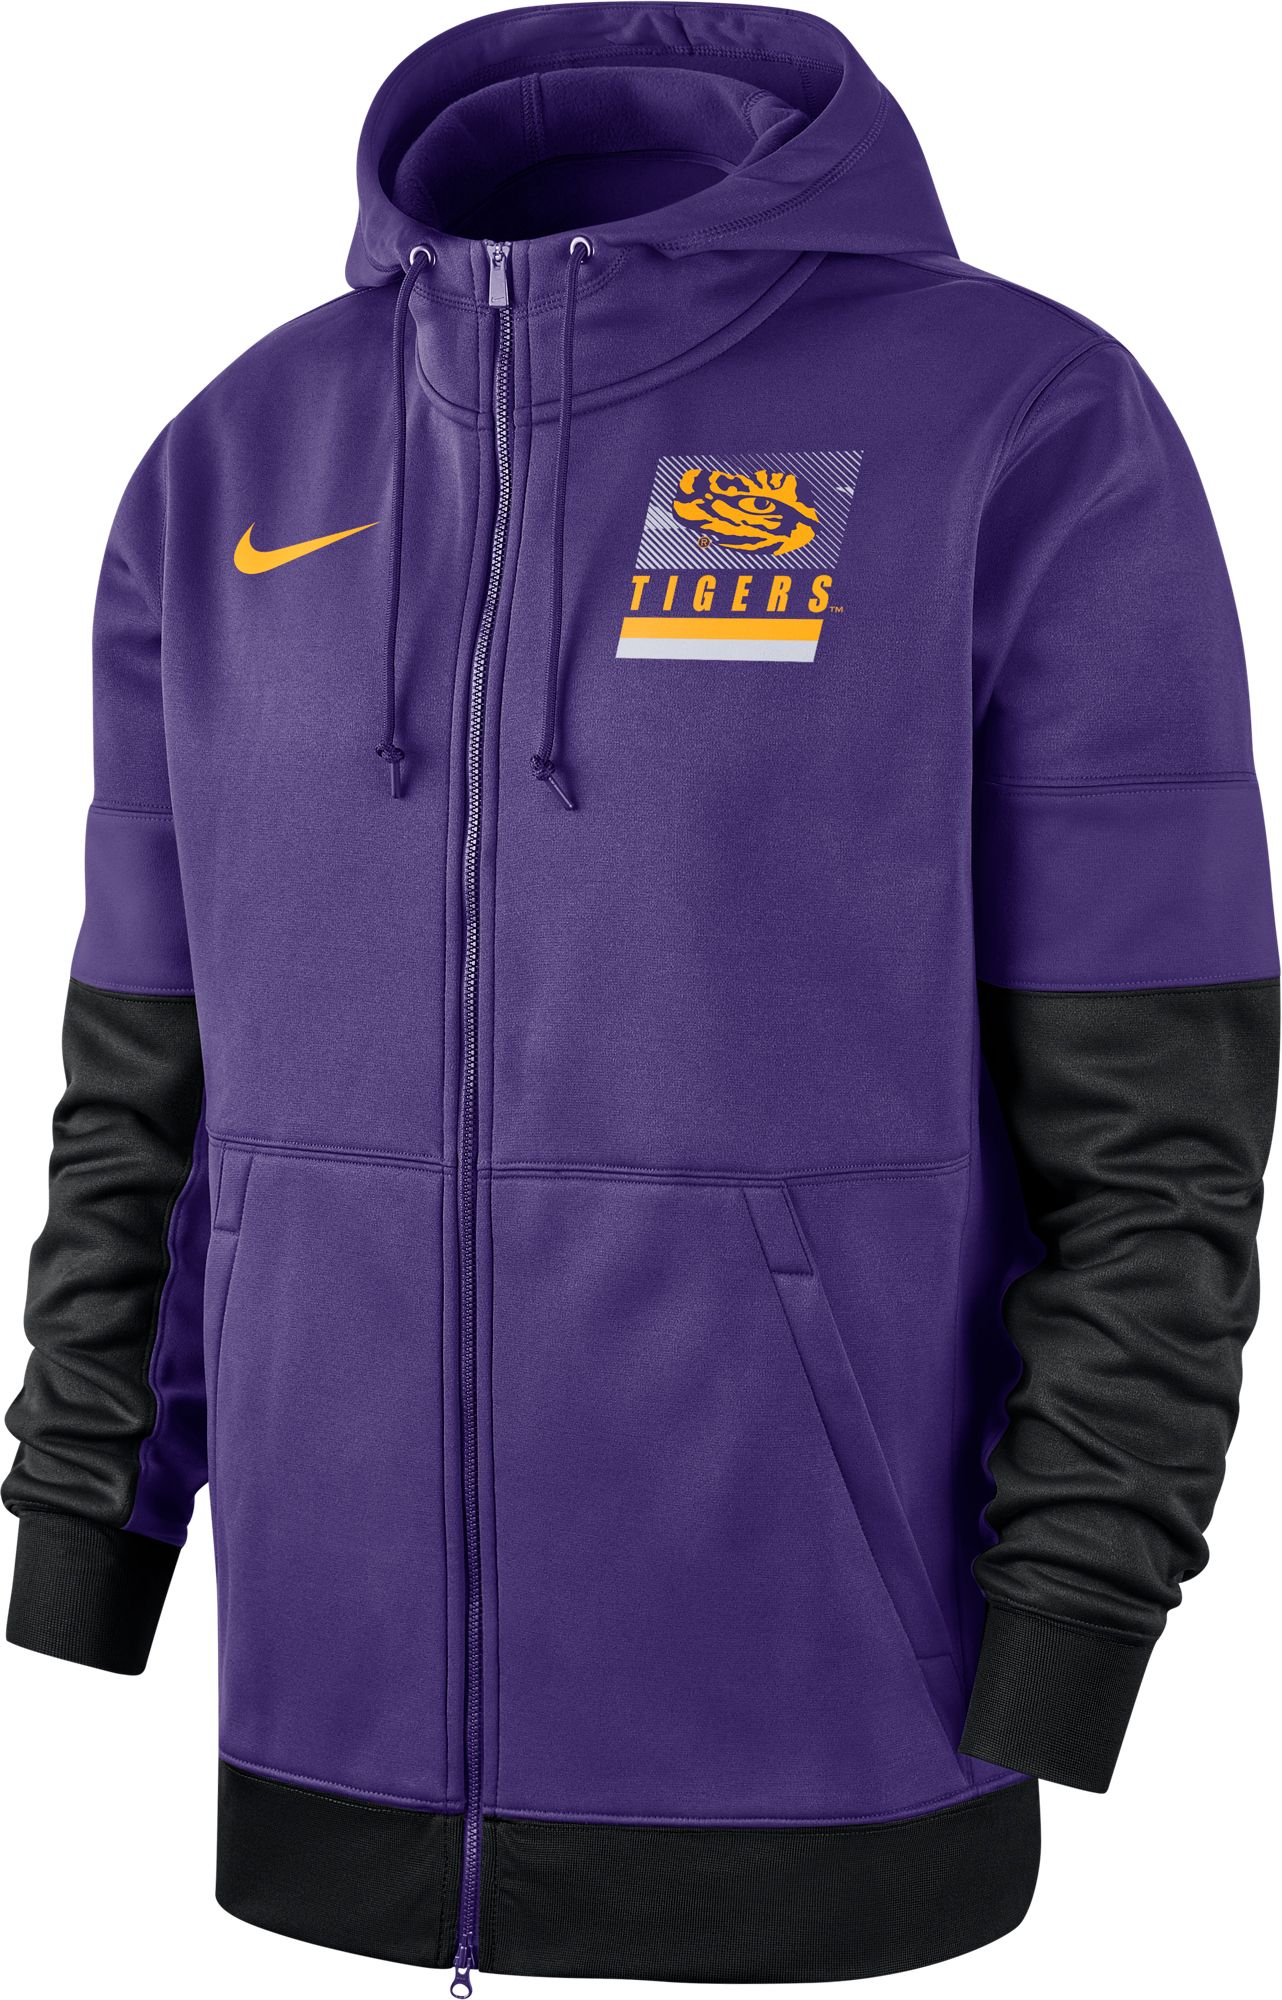 Nike Men's LSU Tigers Purple Therma 